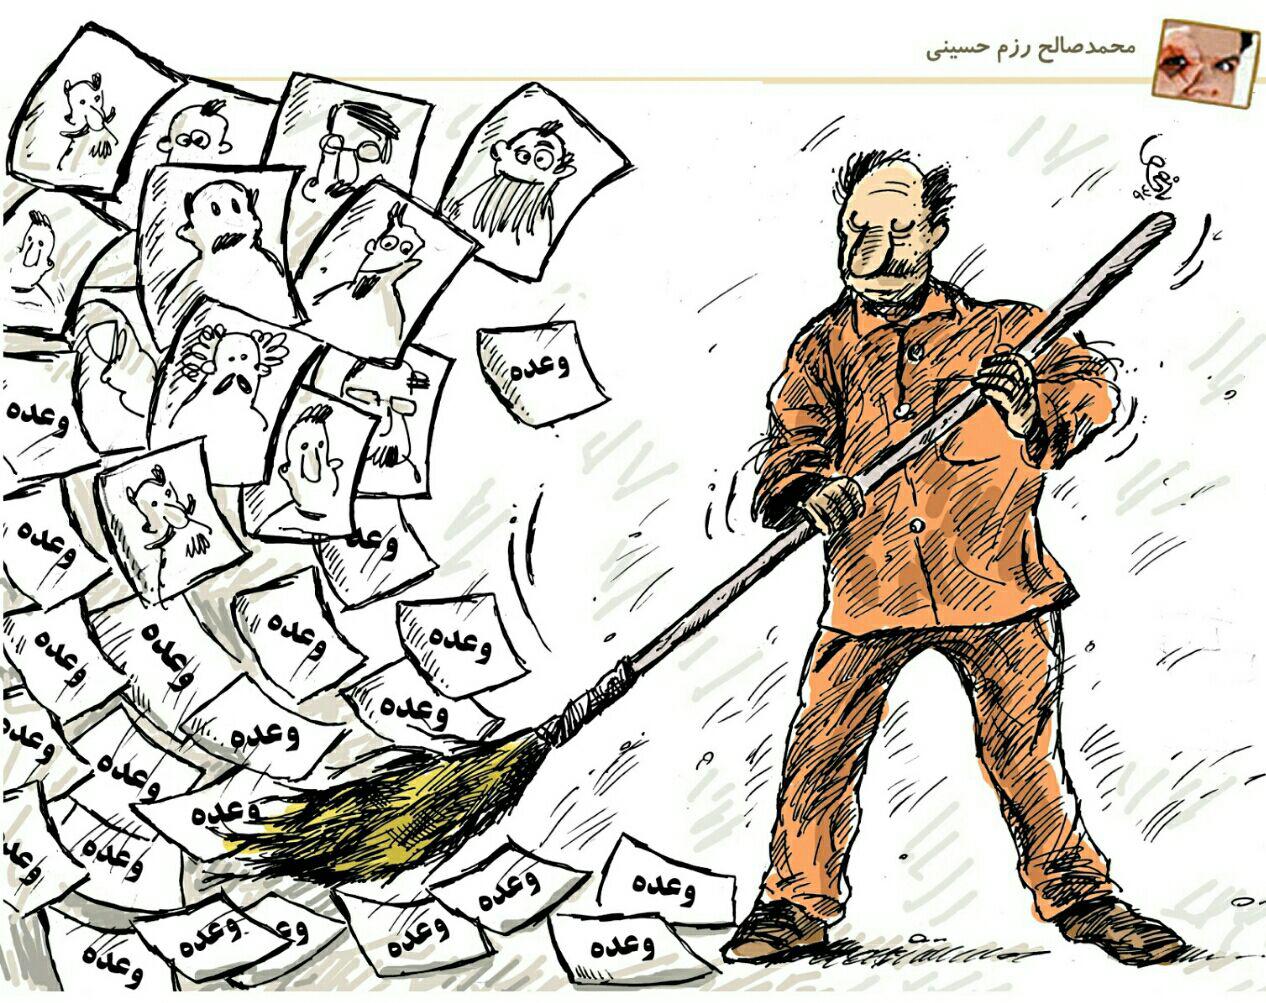 وعده – اثر کارتونی جدید از محمد صالح رزم حسینی